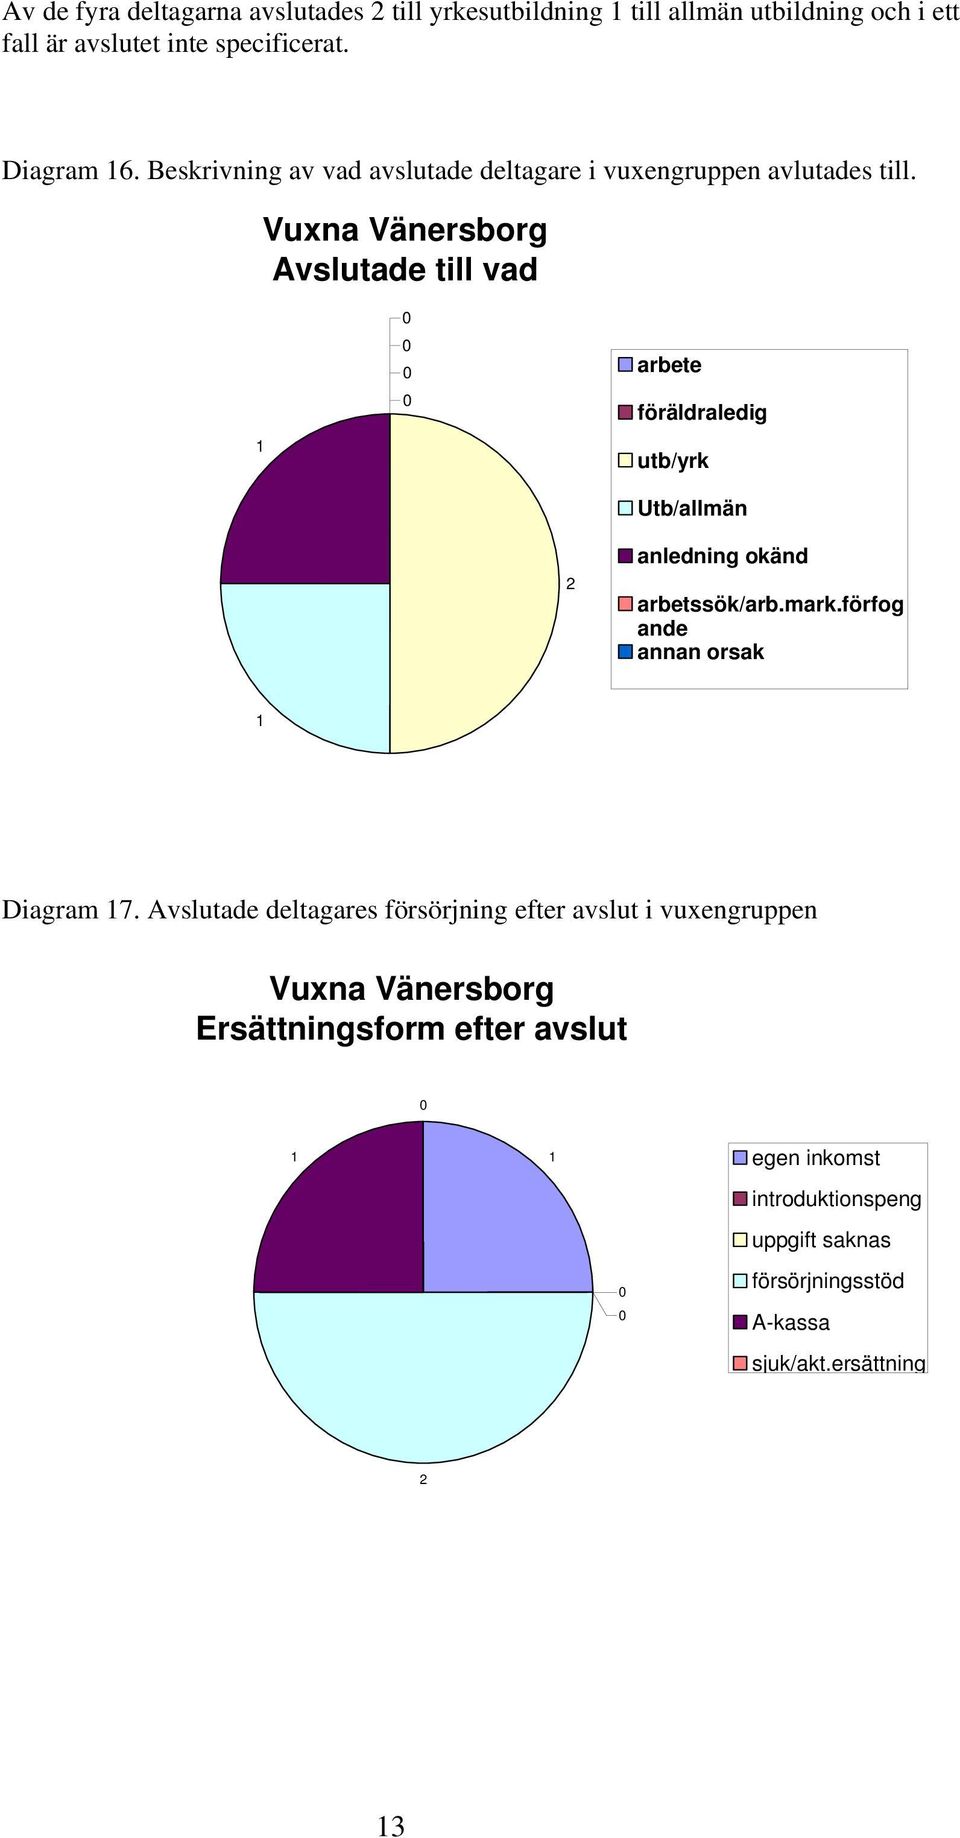 Vuxna Vänersborg Avslutade till vad arbete föräldraledig utb/yrk Utb/allmän 2 anledning okänd arbetssök/arb.mark.